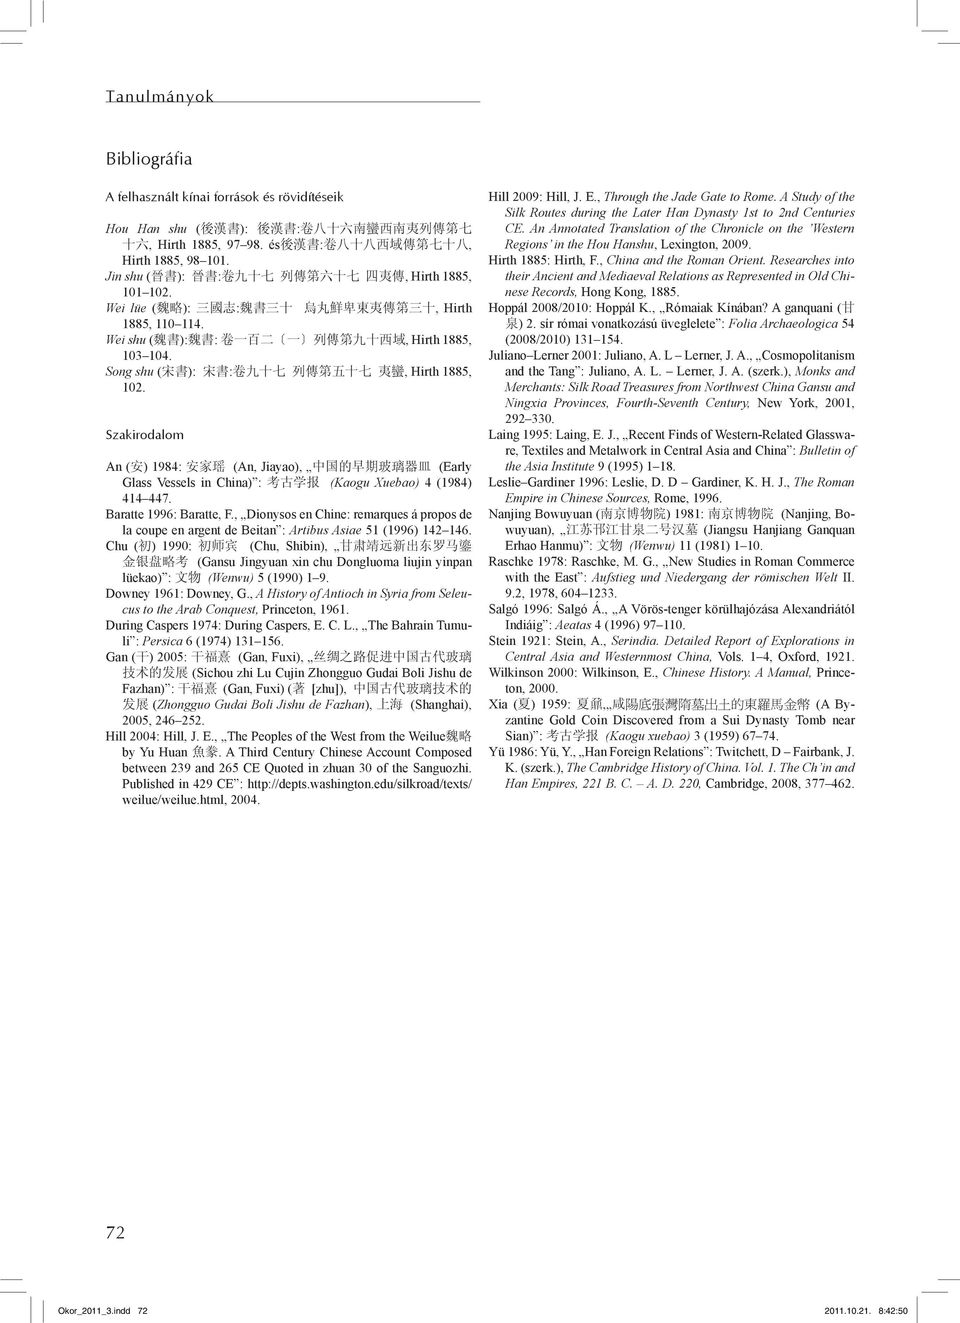 Wei shu ( 魏 書 ): 魏 書 : 卷 一 百 二 一 列 傳 第 九 十 西 域, Hirth 1885, 103 104. Song shu ( 宋 書 ): 宋 書 : 卷 九 十 七 列 傳 第 五 十 七 夷 蠻, Hirth 1885, 102.